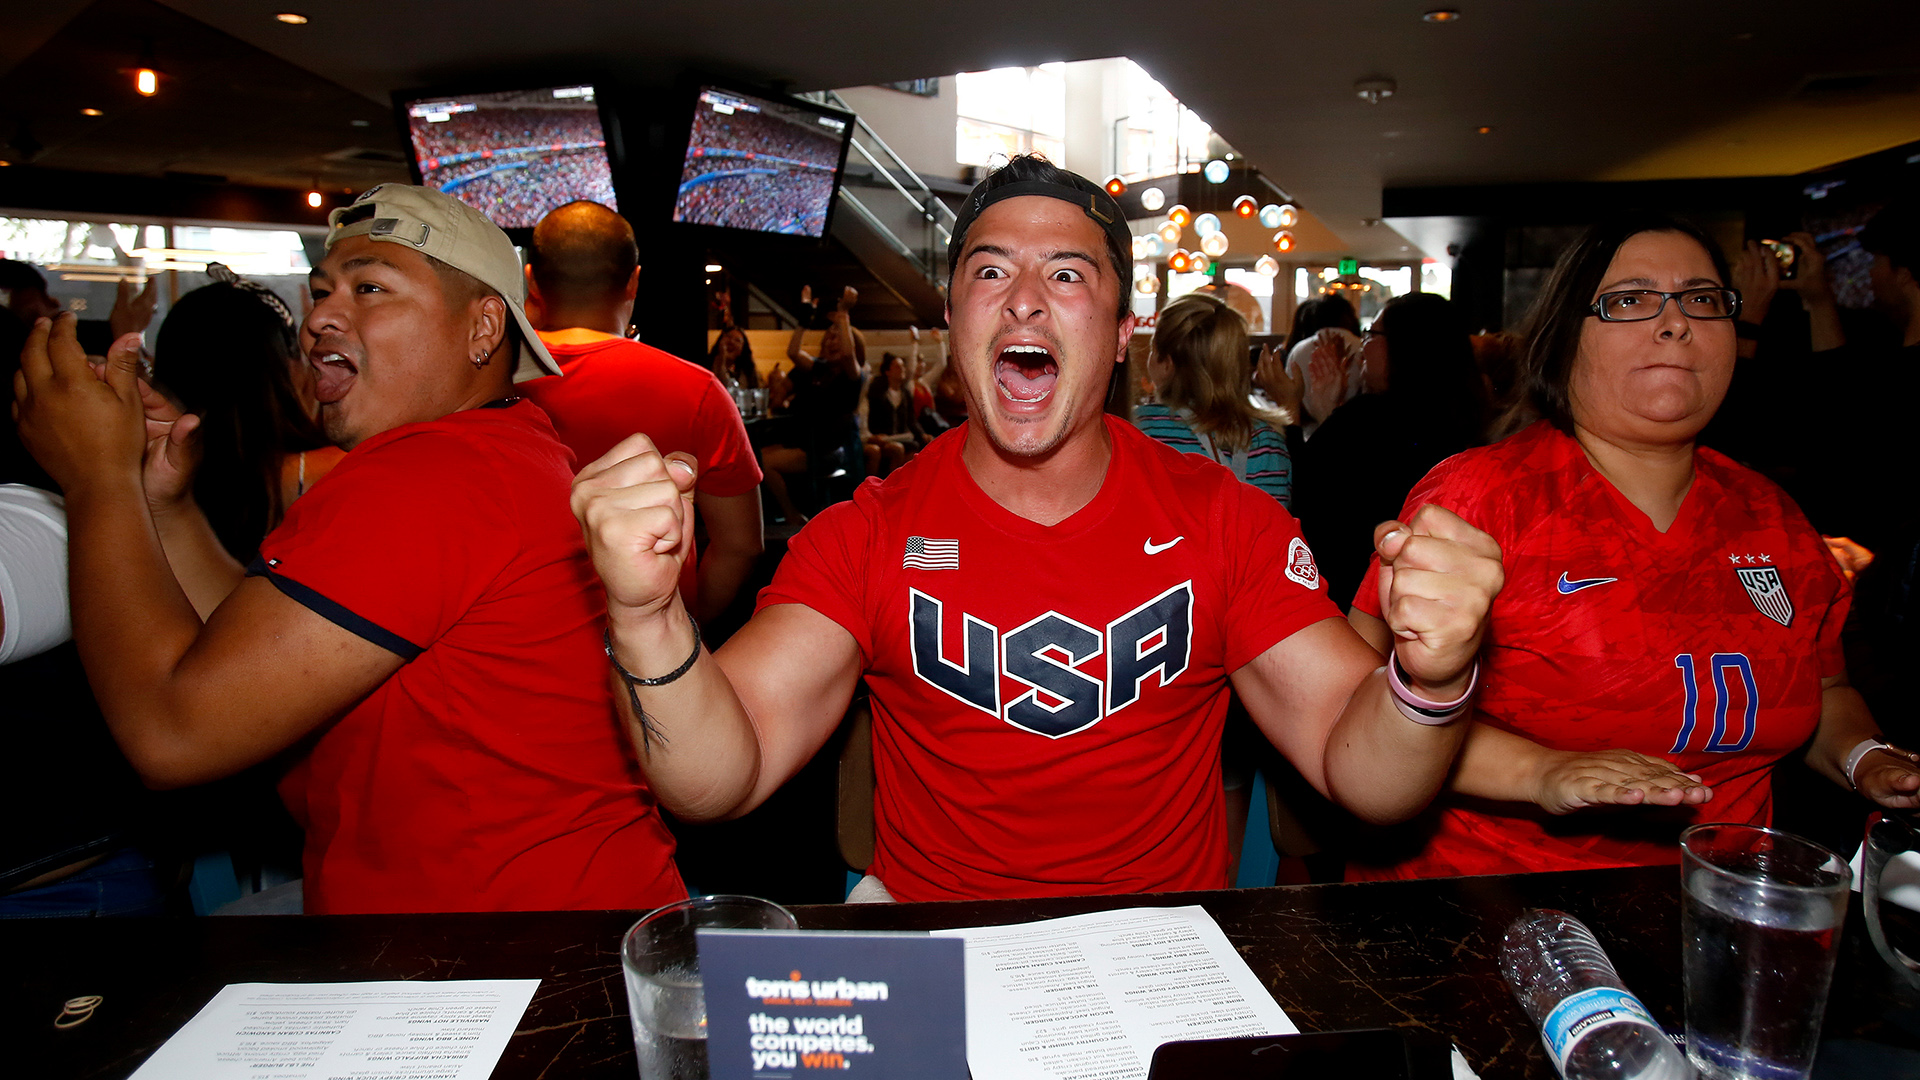  Fans der USA jubeln bei einem gemeinsamen Public Viewing der Fußball WM der Frauen in einer Bar (Archivbild vom 07.07.2019). | picture alliance/dpa/FR170512 AP